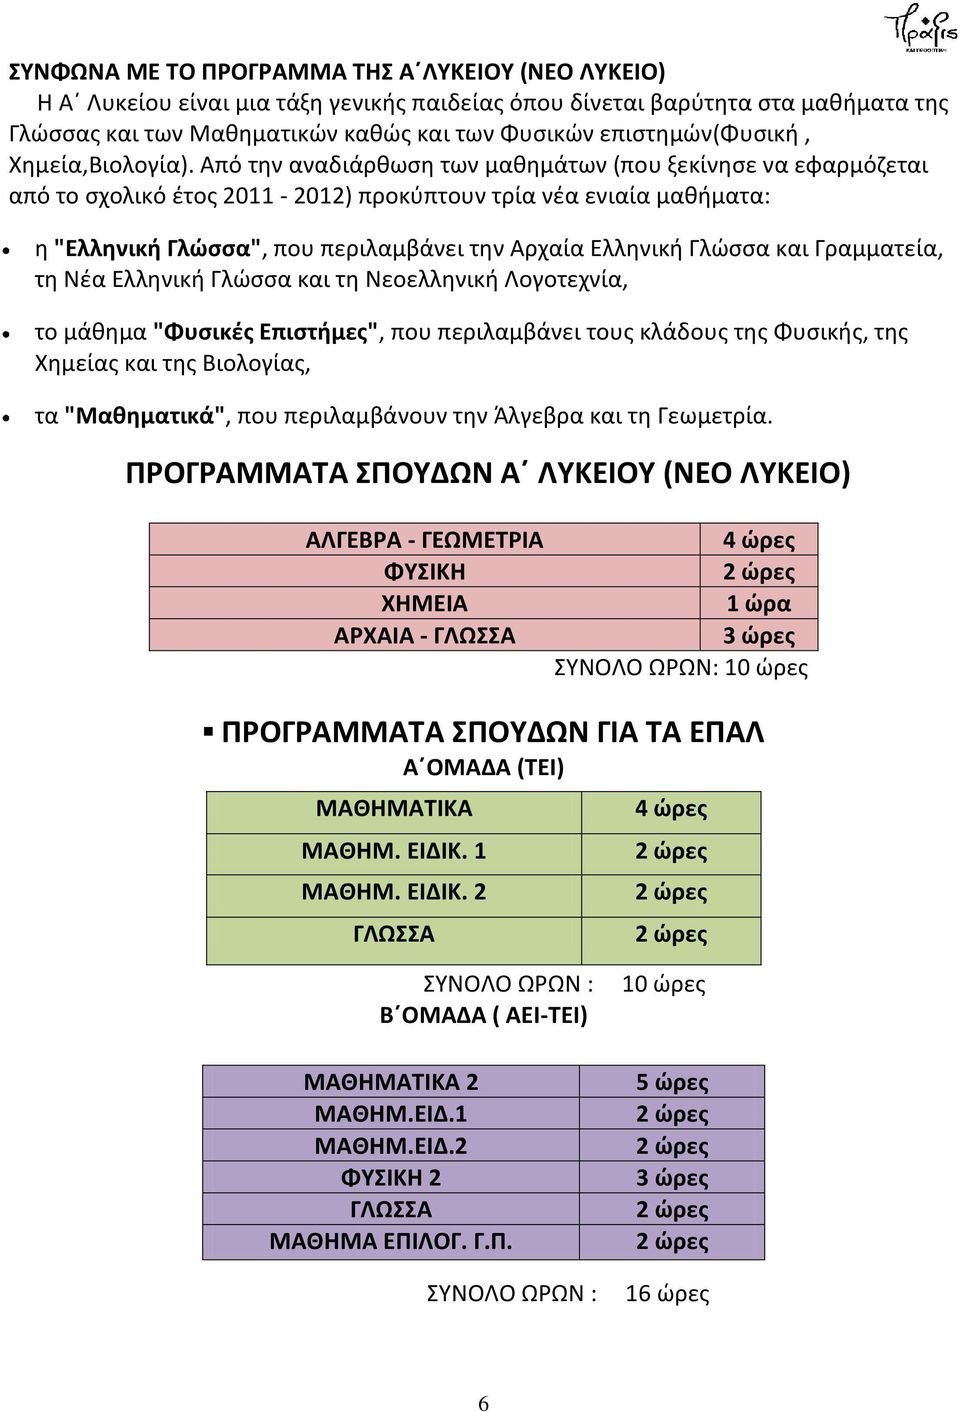 Από την αναδιάρθωση των μαθημάτων (που ξεκίνησε να εφαρμόζεται από το σχολικό έτος 2011-2012) προκύπτουν τρία νέα ενιαία μαθήματα: η "Ελληνική Γλώσσα", που περιλαμβάνει την Αρχαία Ελληνική Γλώσσα και